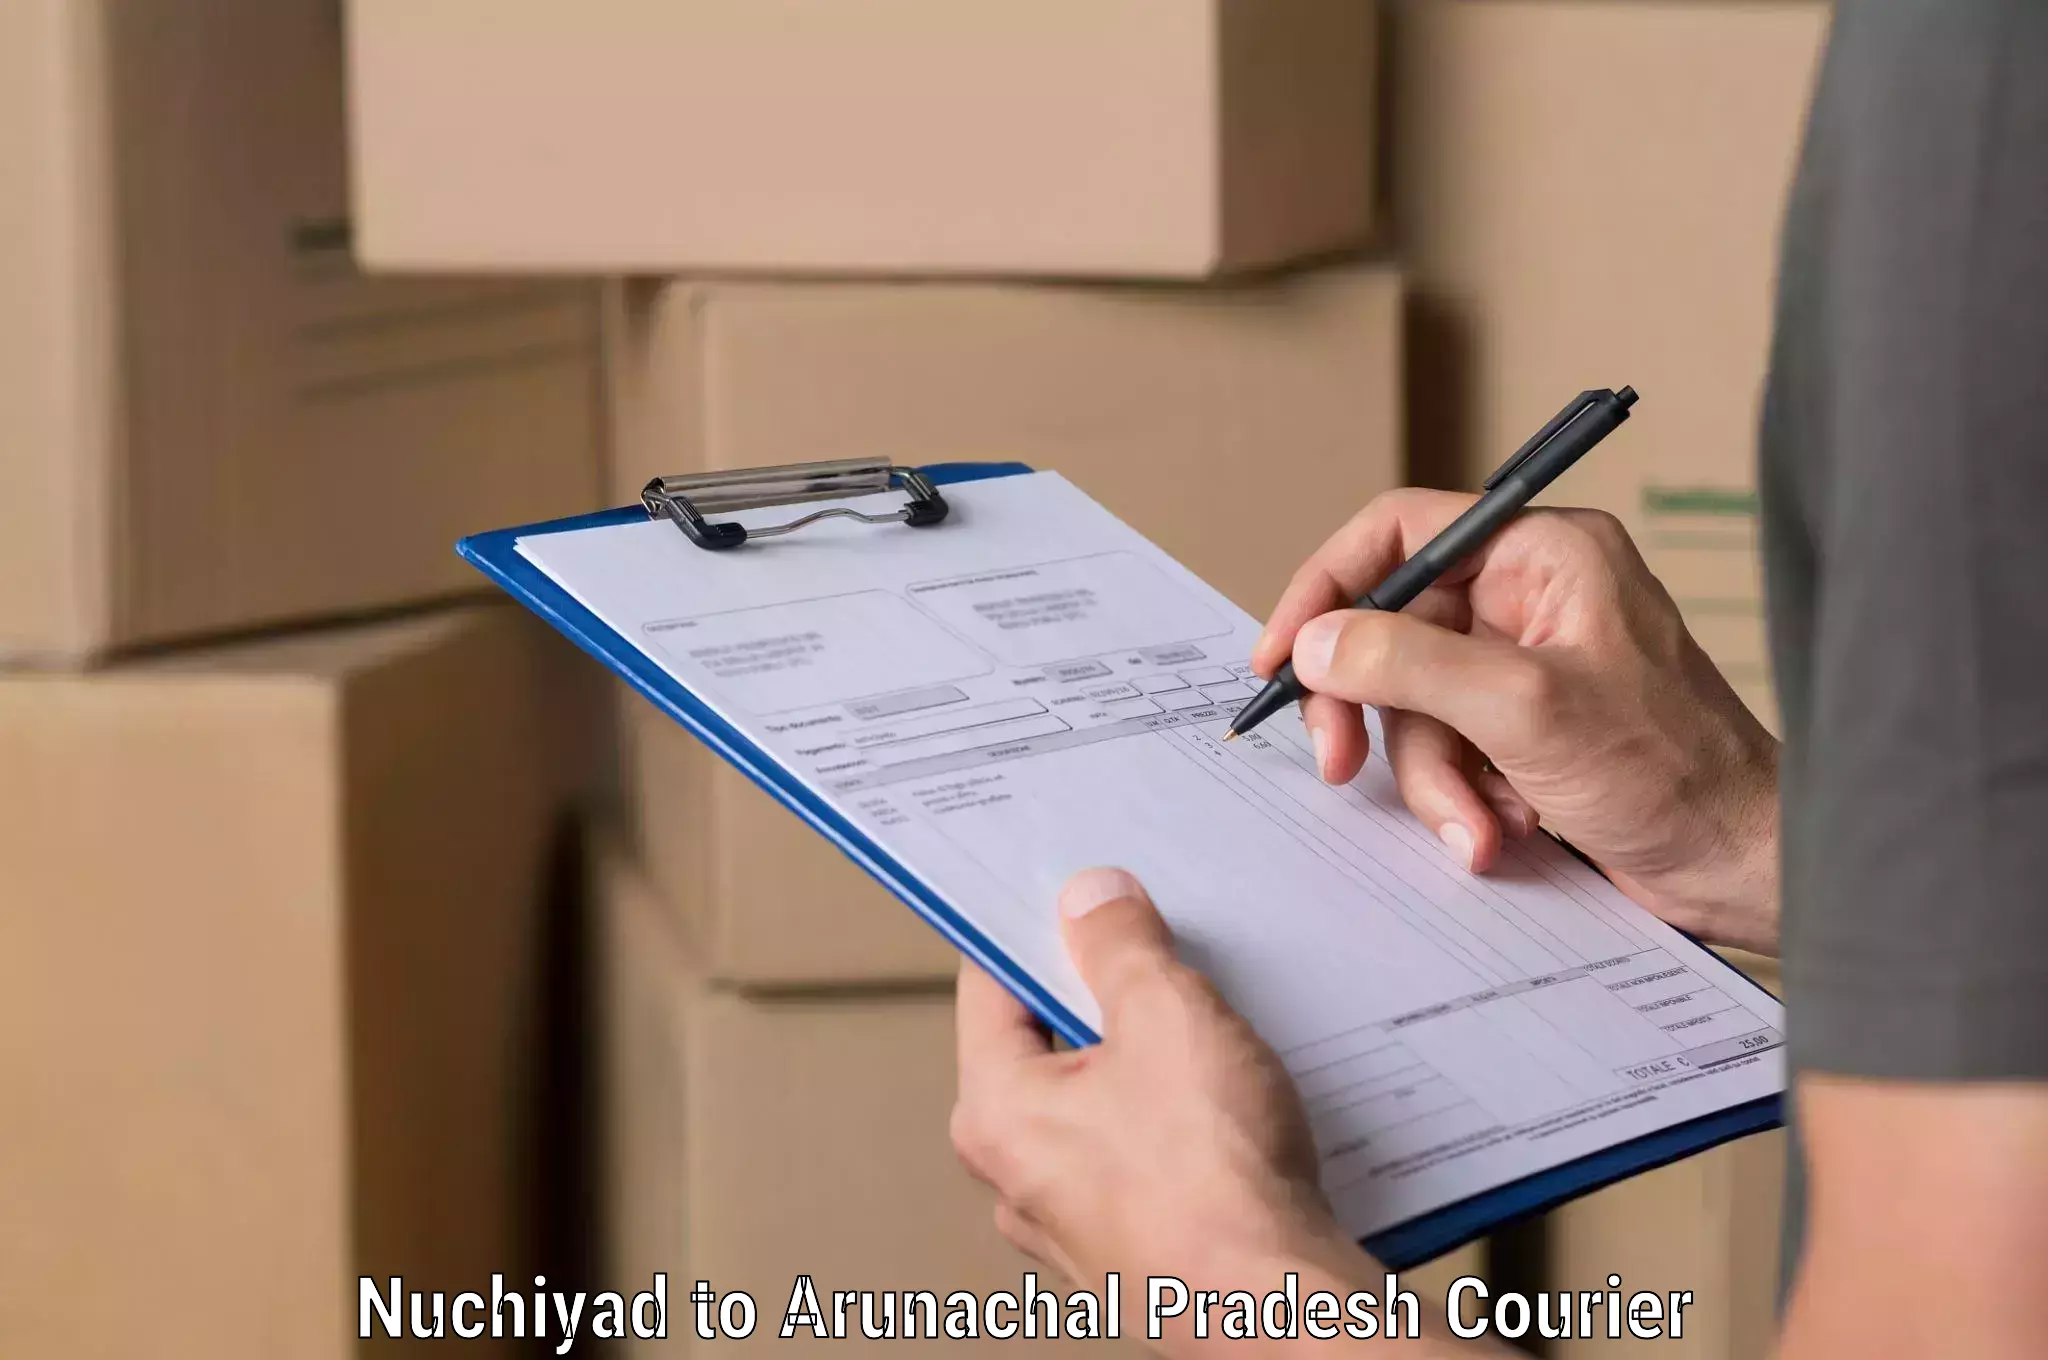 Courier service partnerships Nuchiyad to Arunachal Pradesh